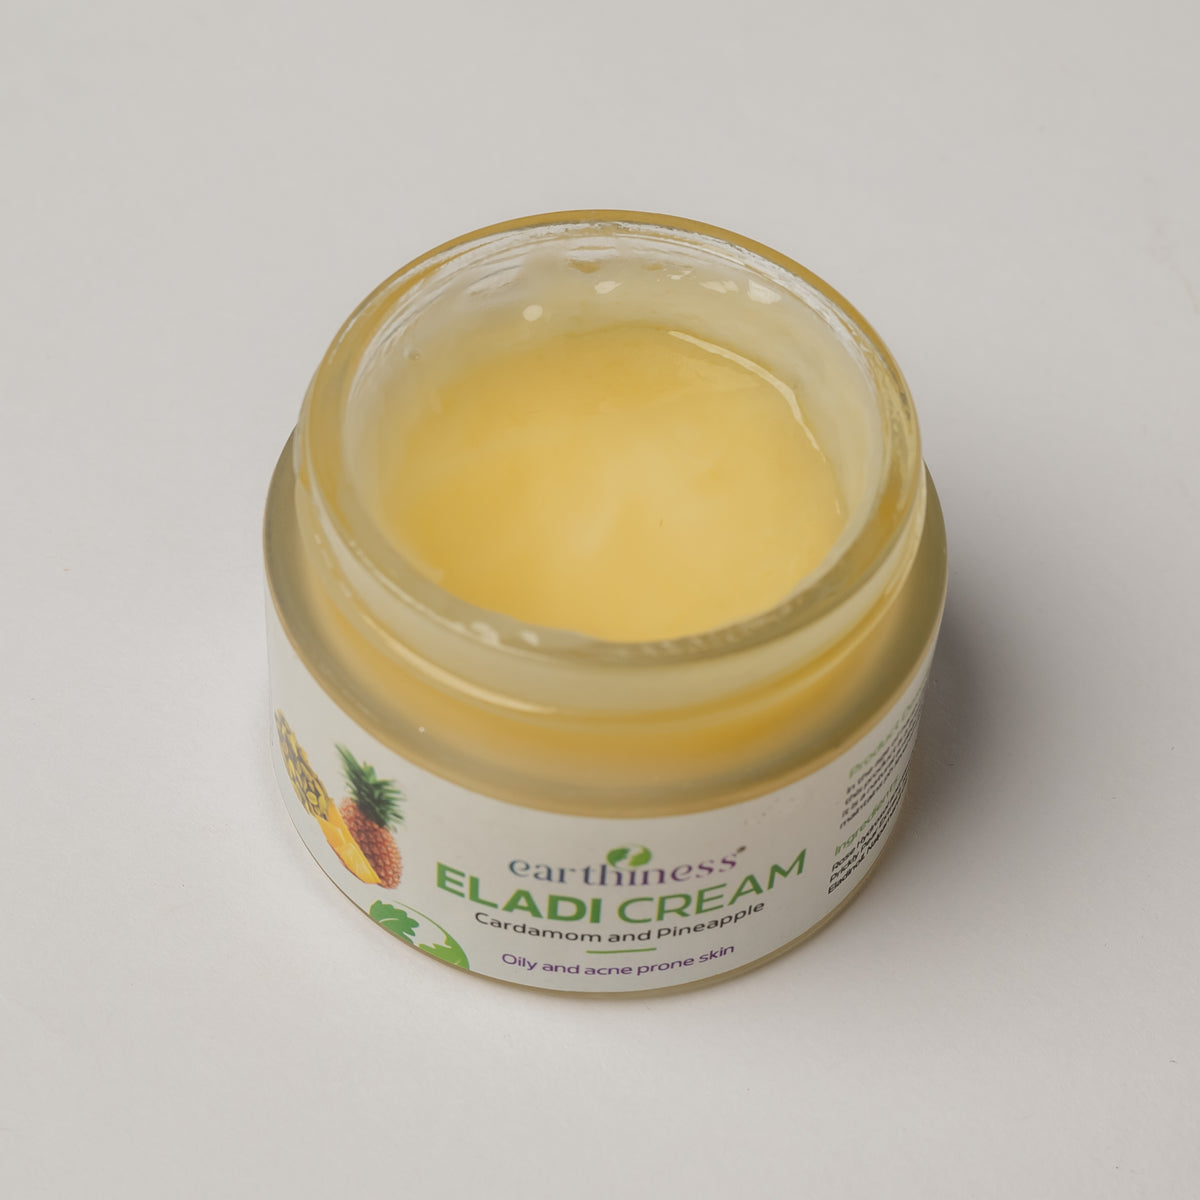 Organic Eladi Cream With Rose Hydrosol & Elaichi Hydrosol For Acne Prone Skin